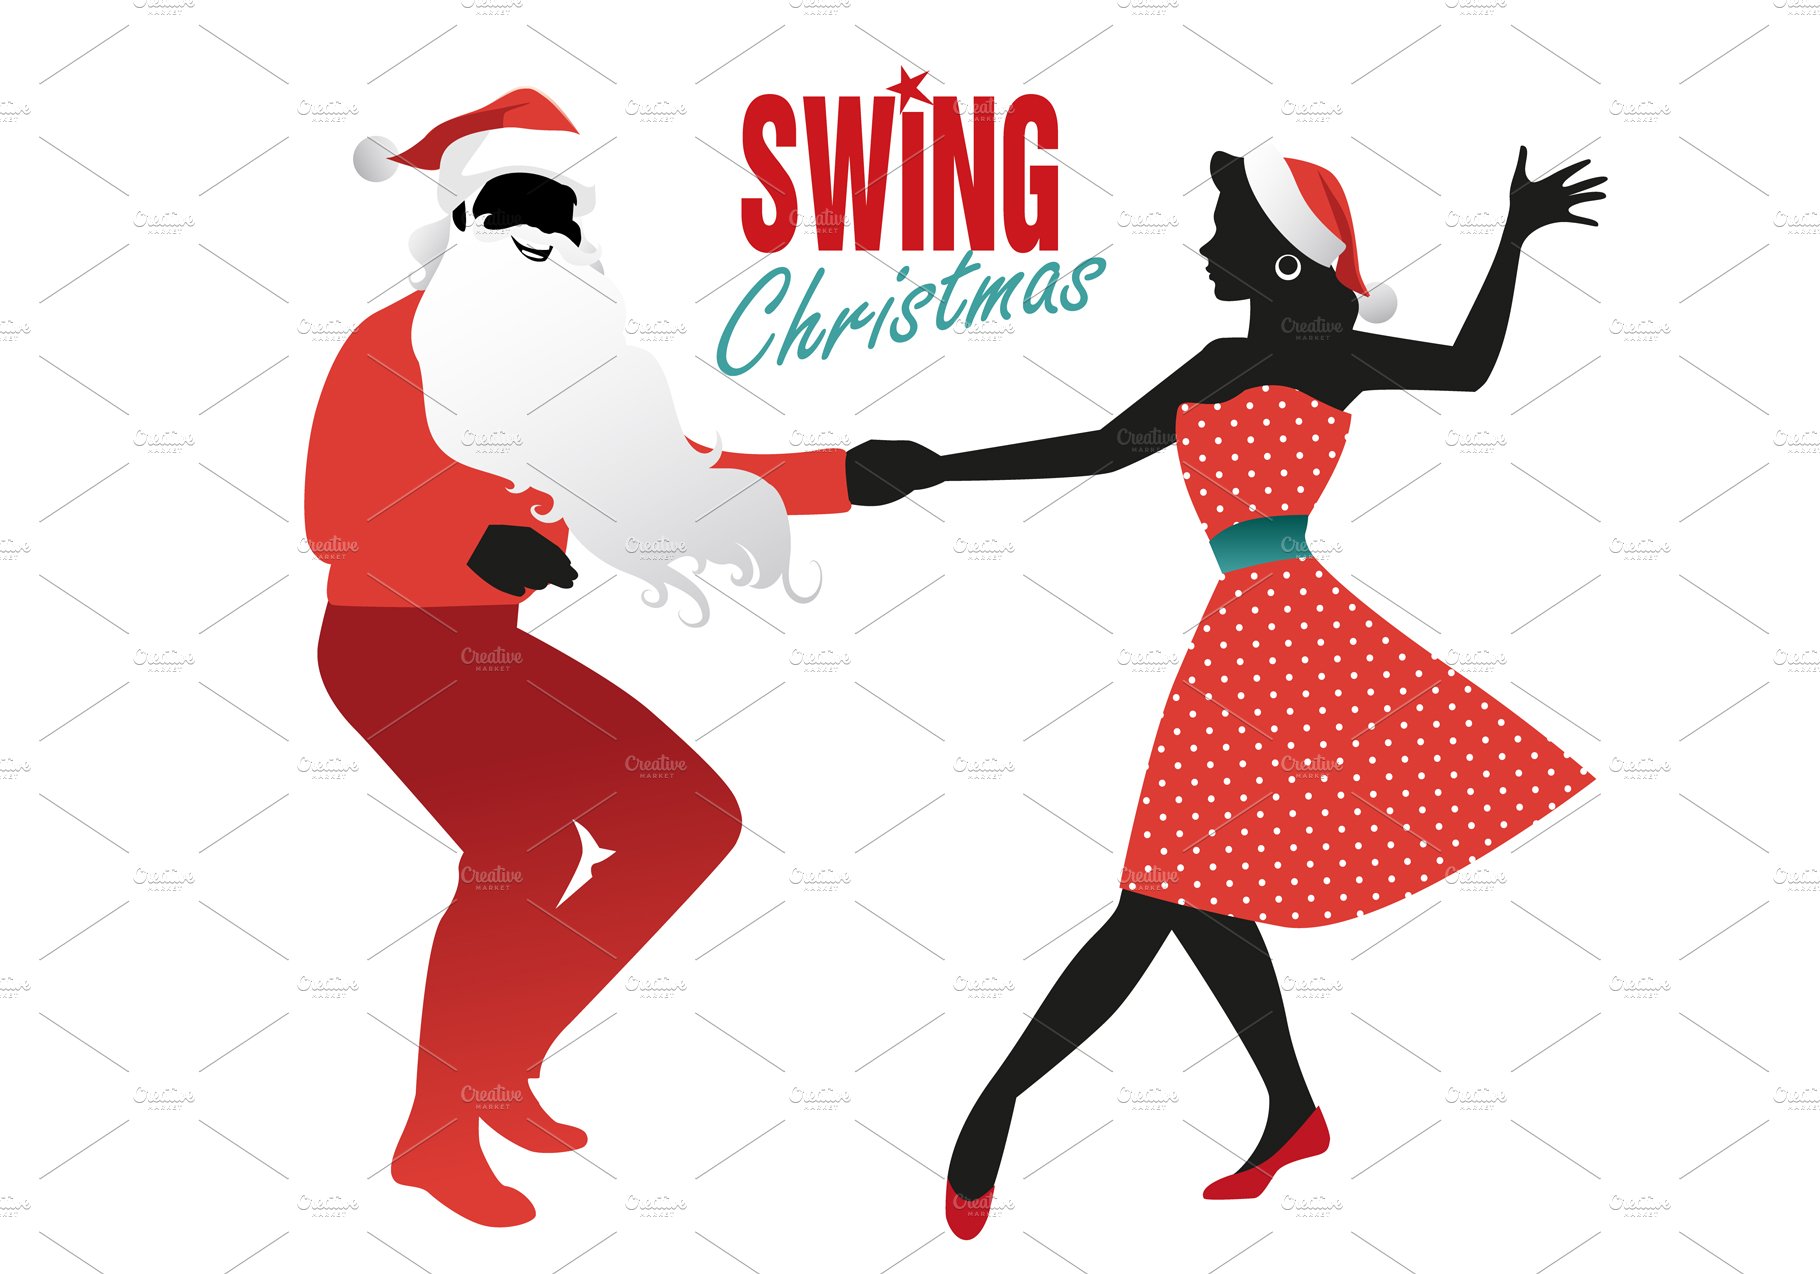 Christmas couple dancing III cover image.